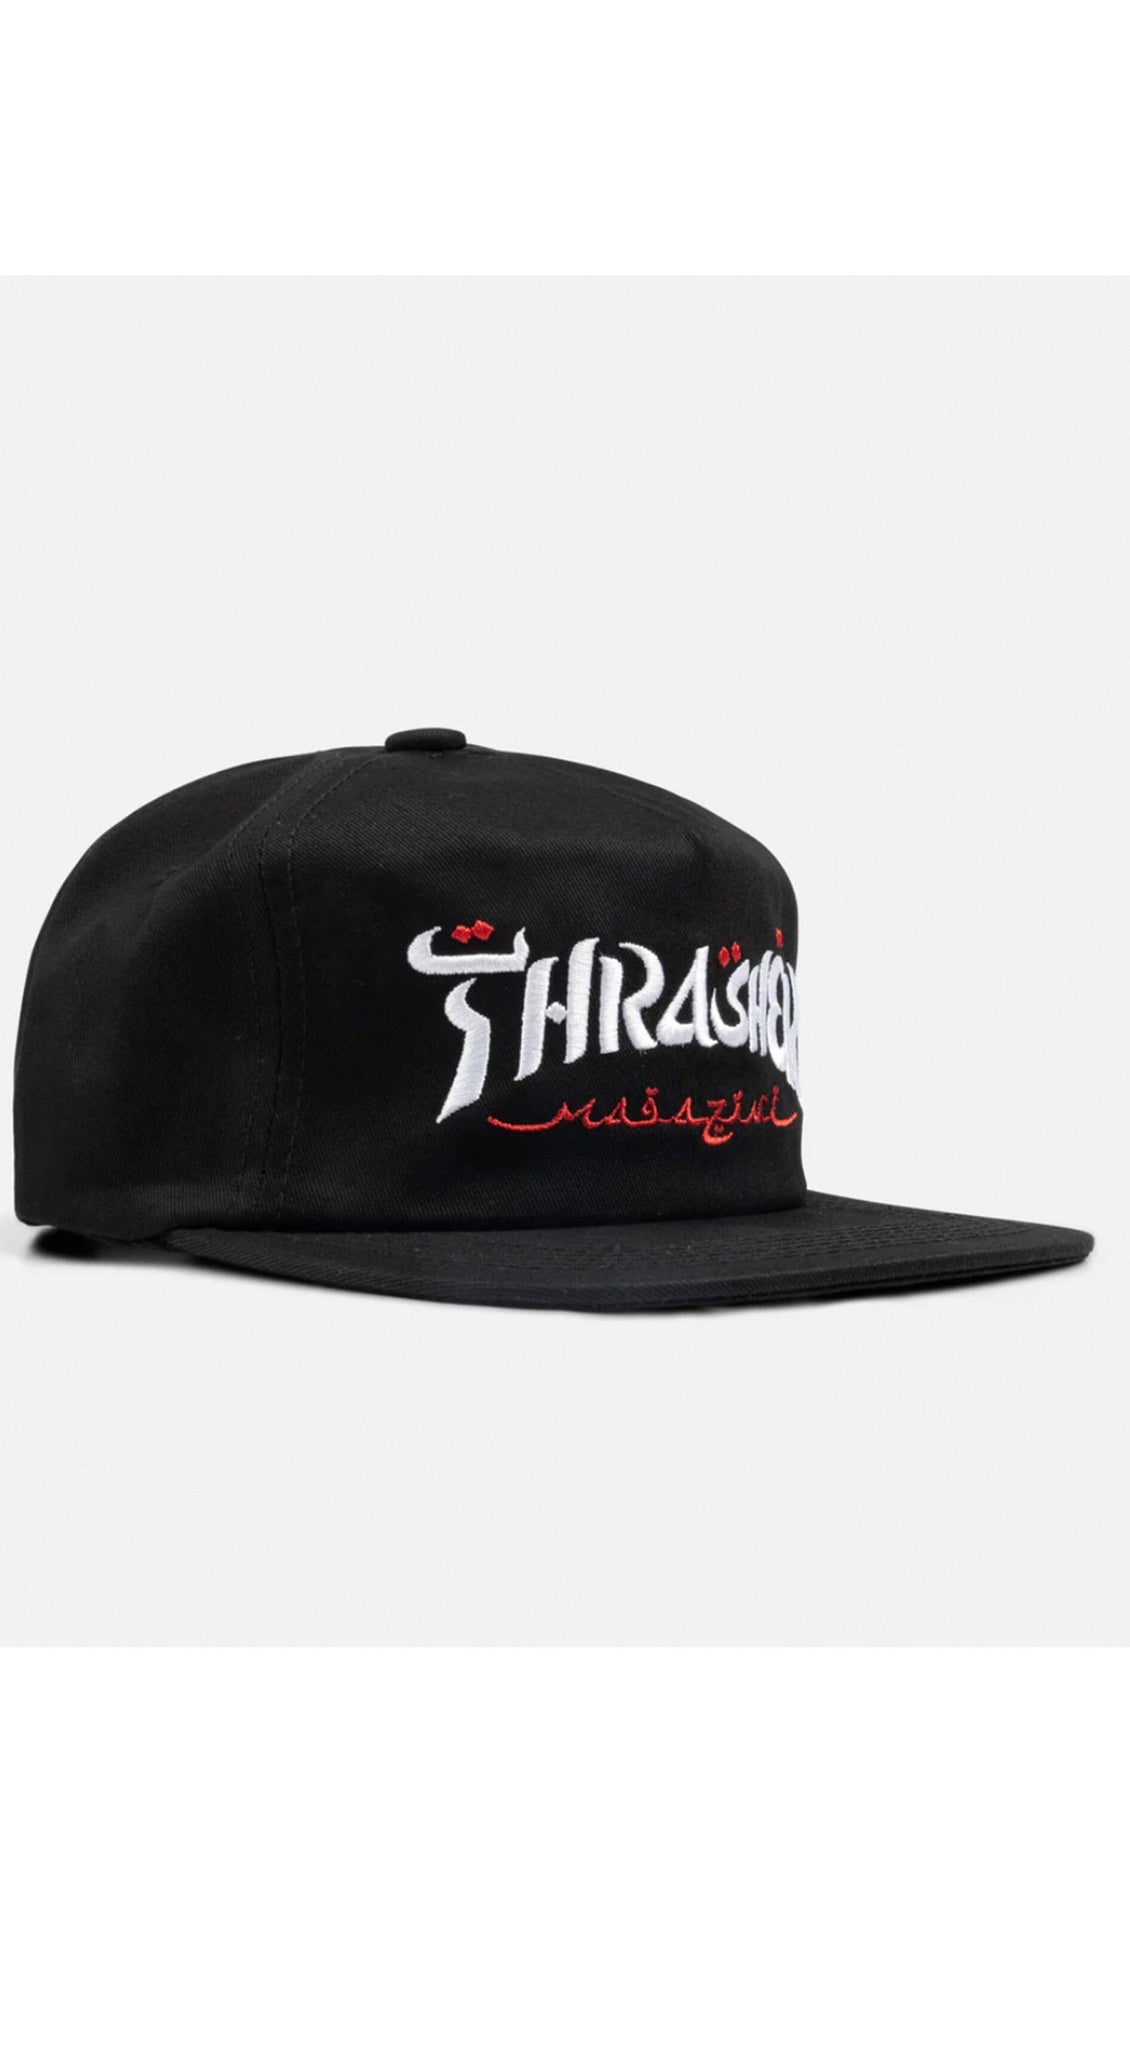 Thrasher Calligraphy Snapback hat -Gorra Ropa Thrasher Magazine 